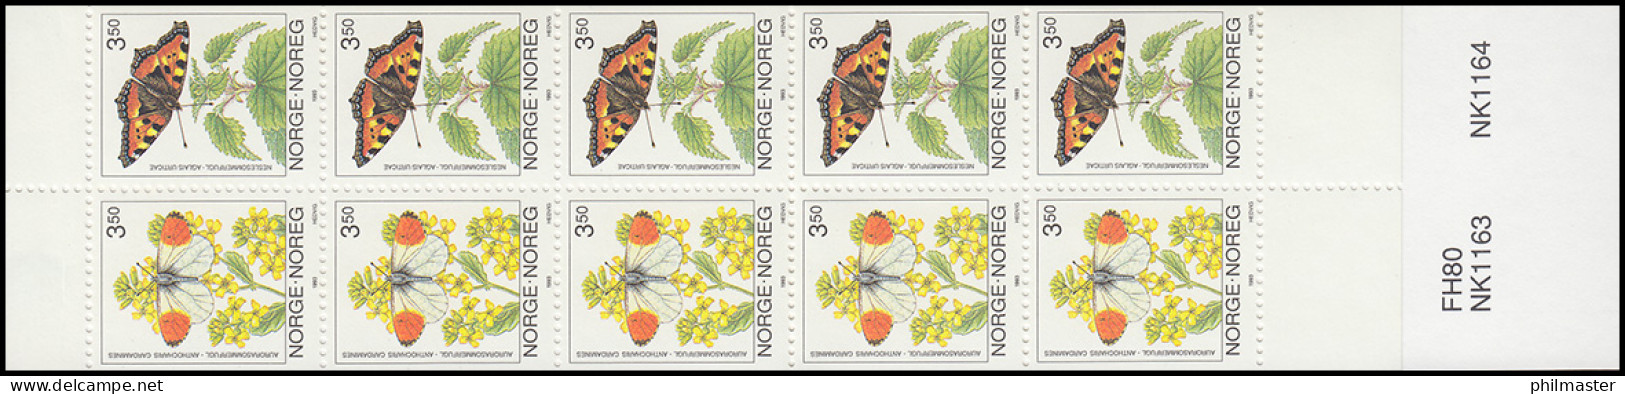 Norwegen Markenheftchen 20 Schmetterlinge Butterflies Sommerfugler 1993, ** - Markenheftchen